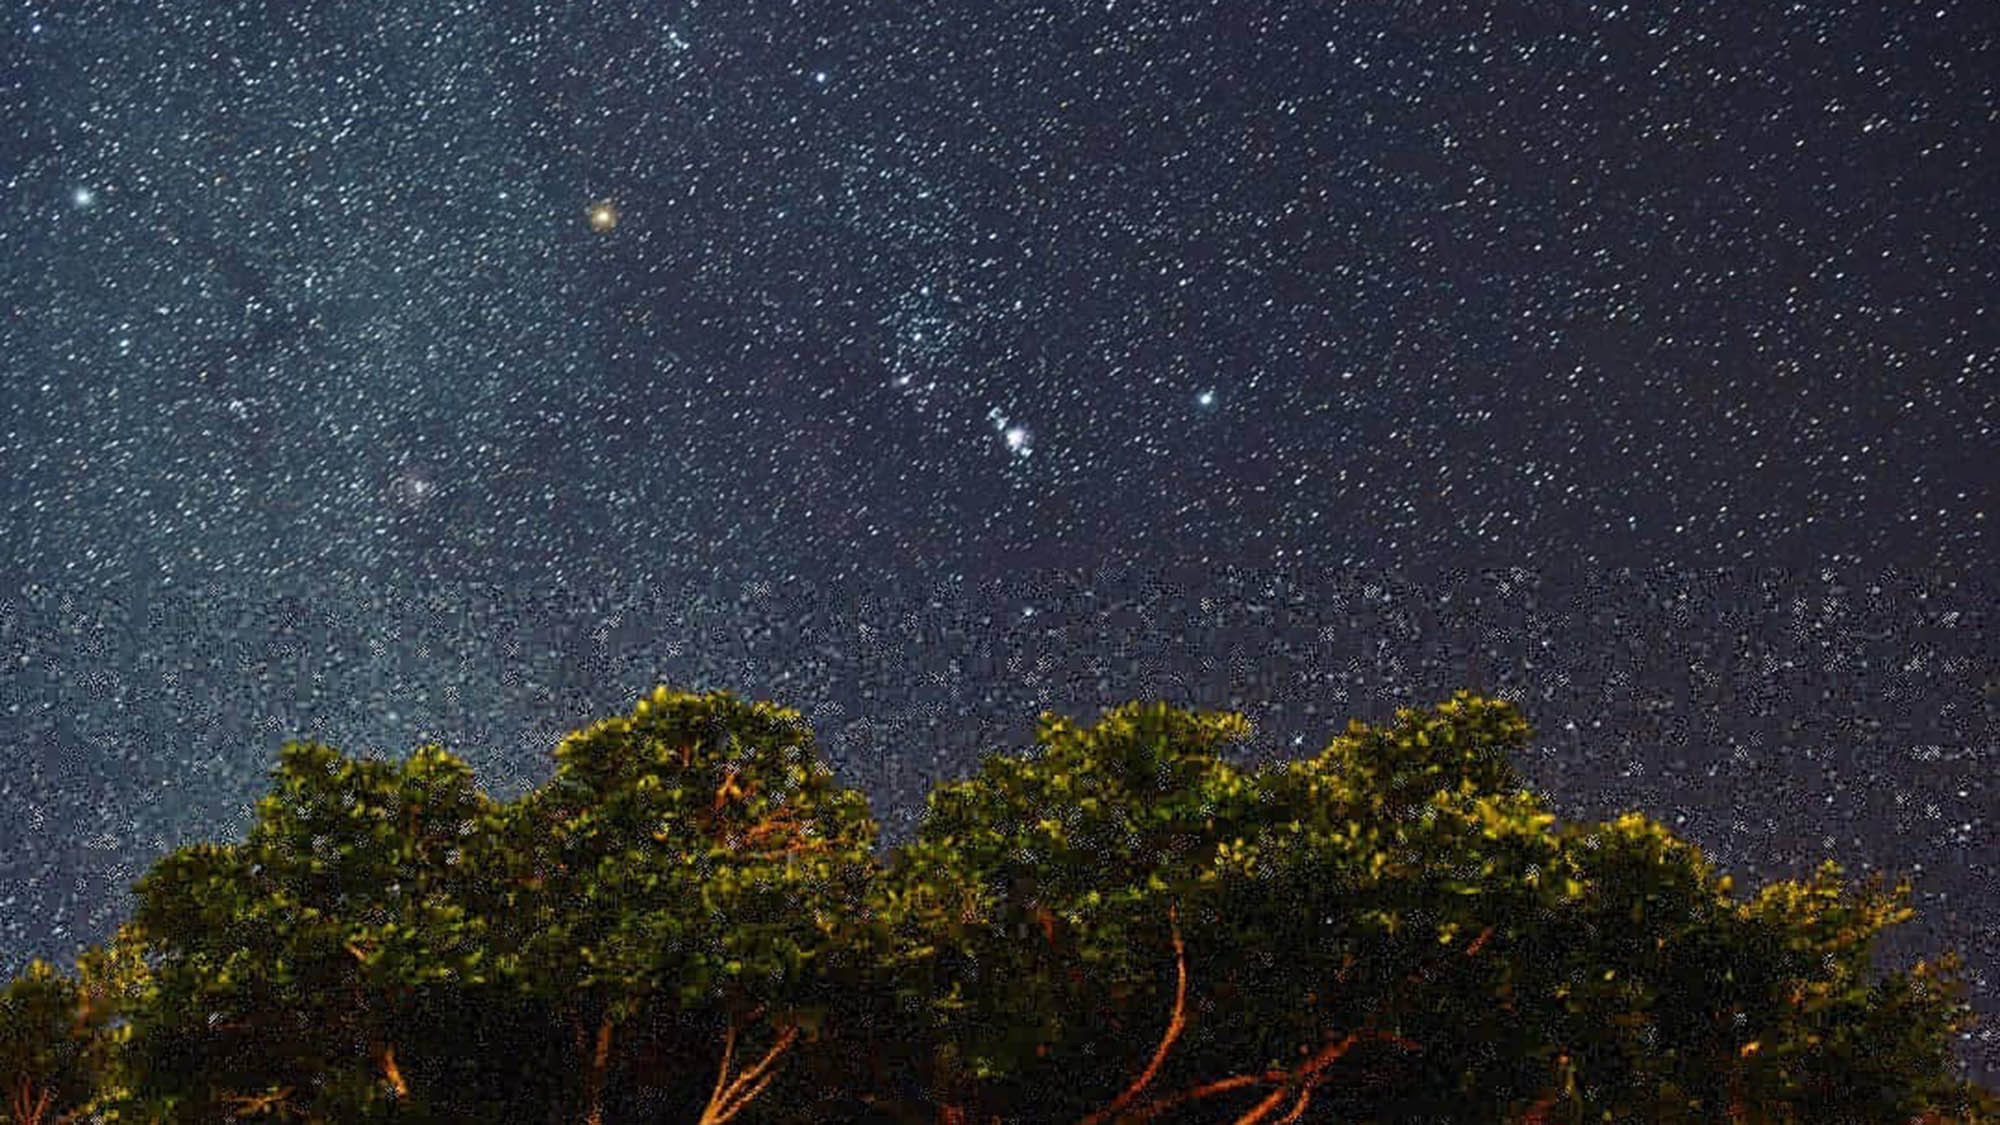 ・沖縄といえばやはりオリオン！ 星が生まれる場所と言われるオリオン座大星雲もよく見えます